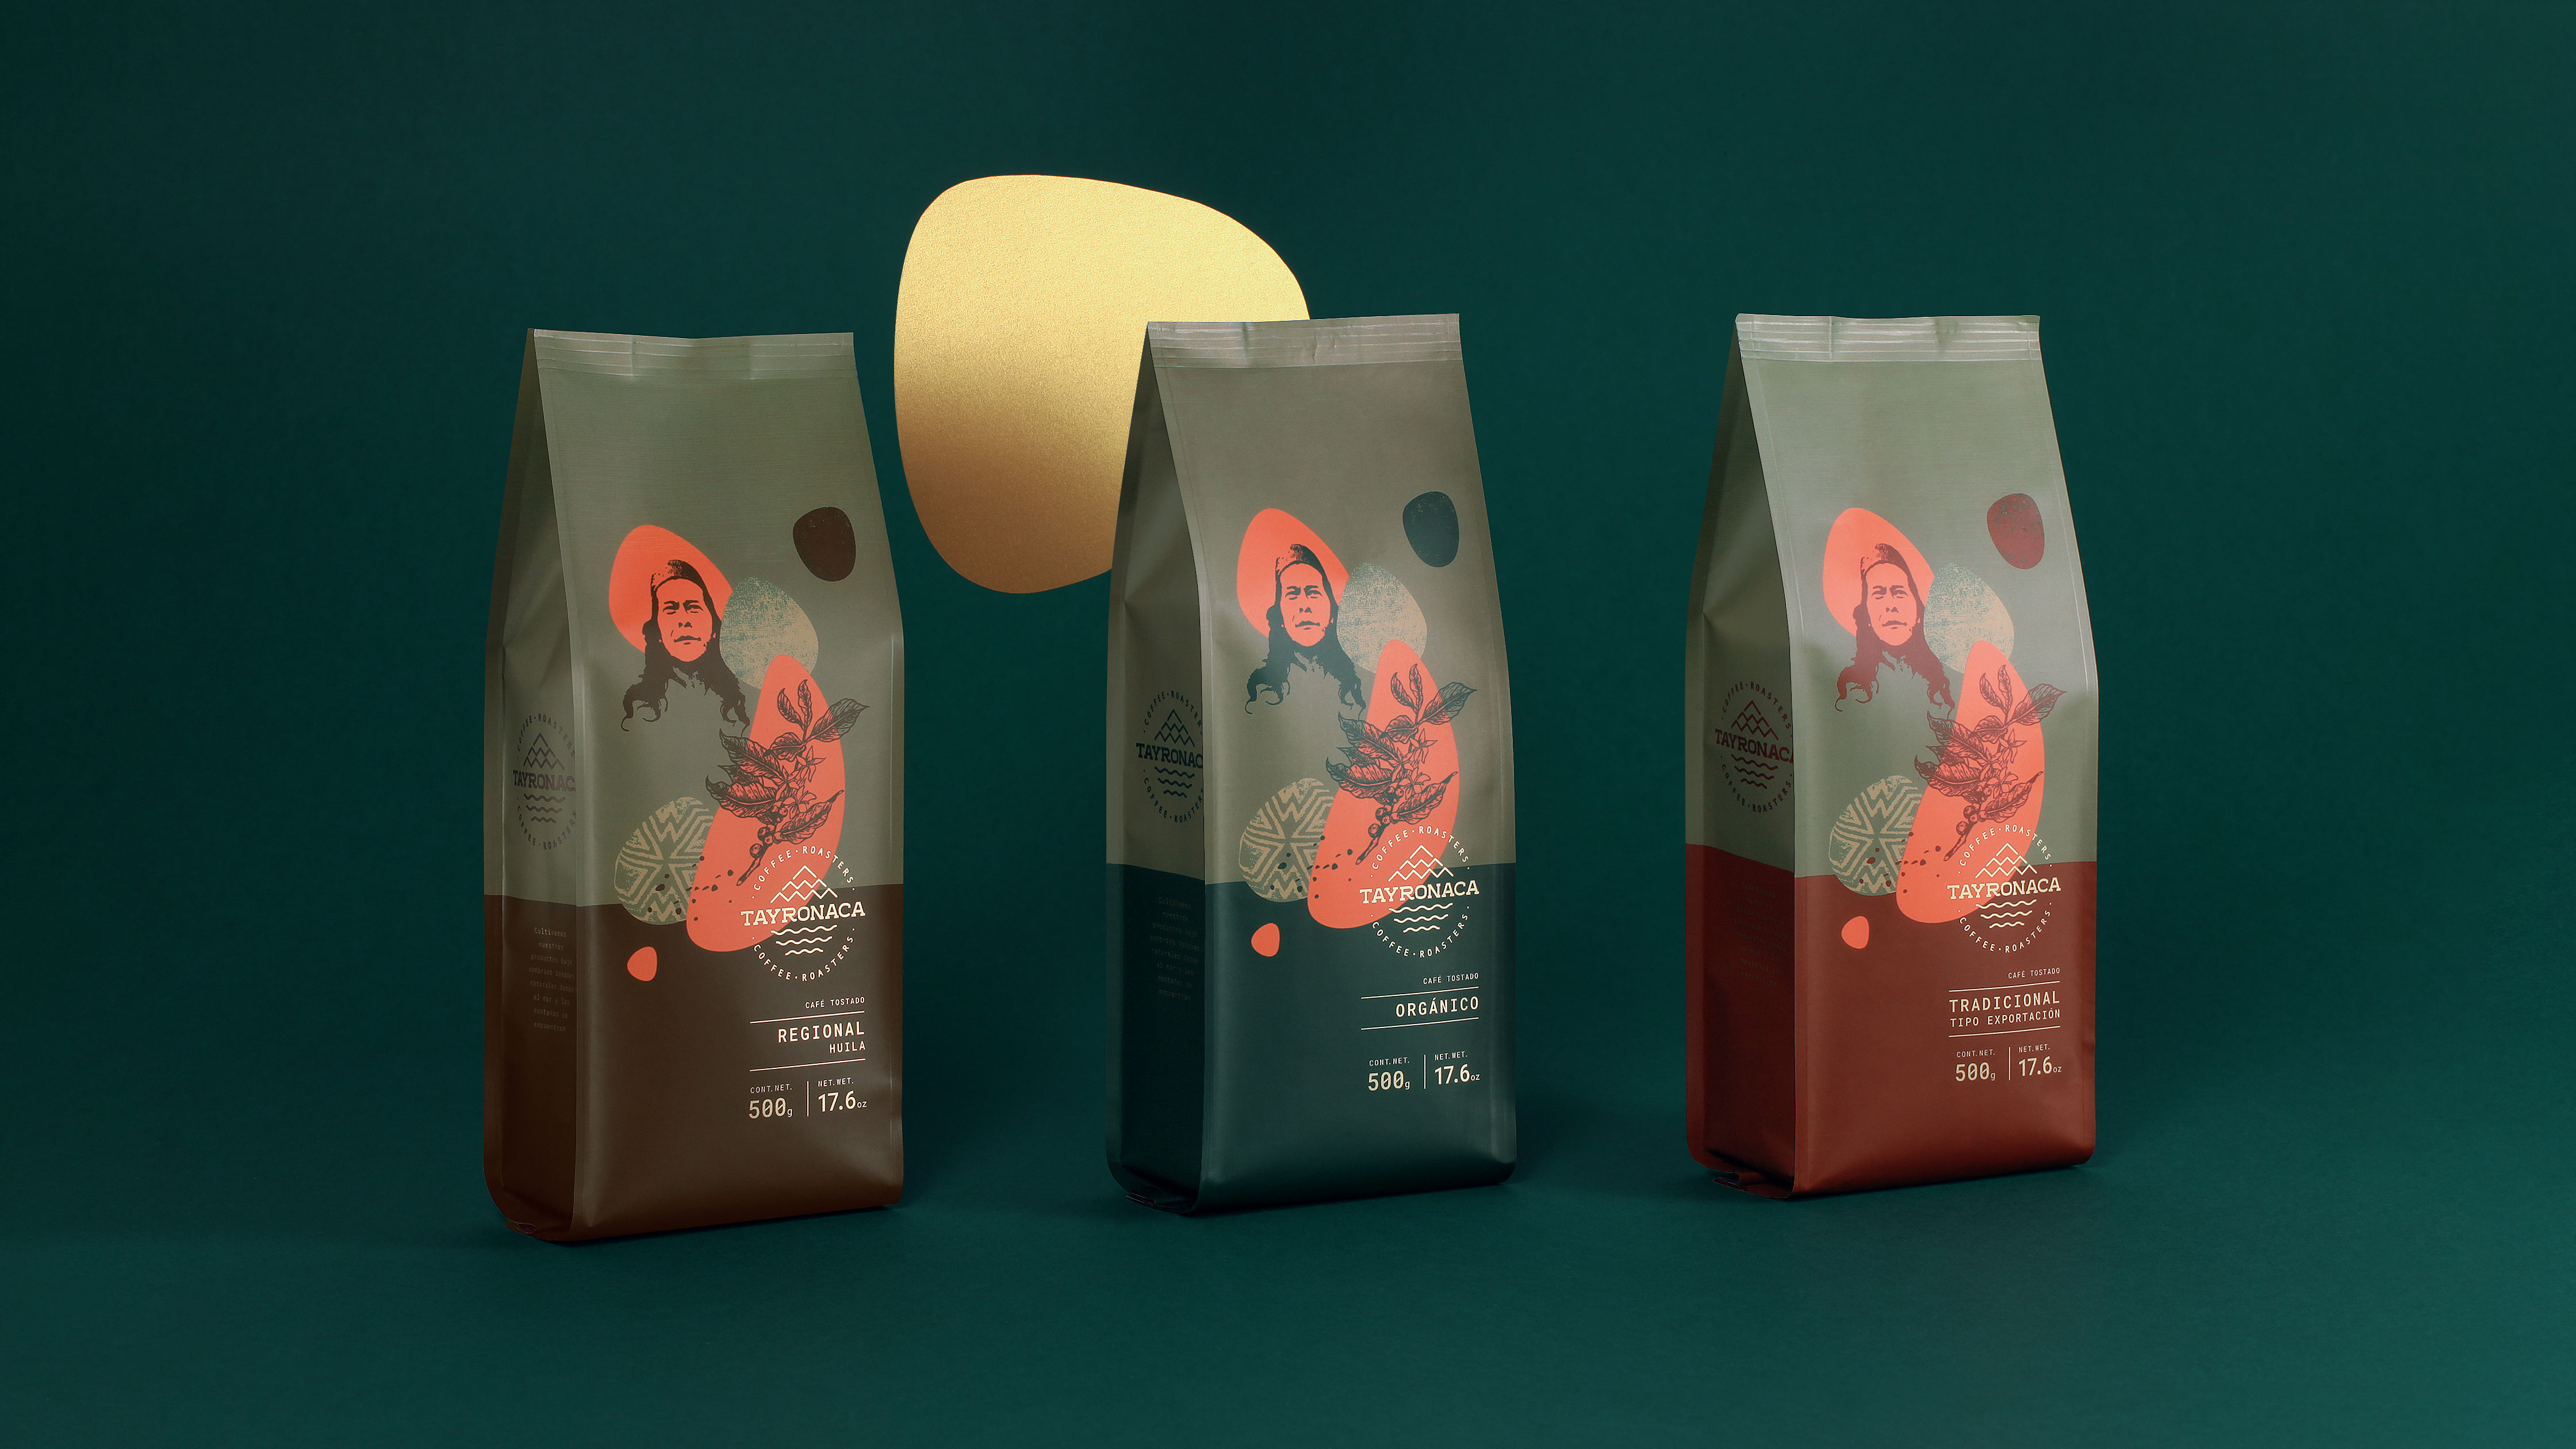 VorticeEstudio Creates Branding and Packaging Design For Tayronaca Coffee Roasters